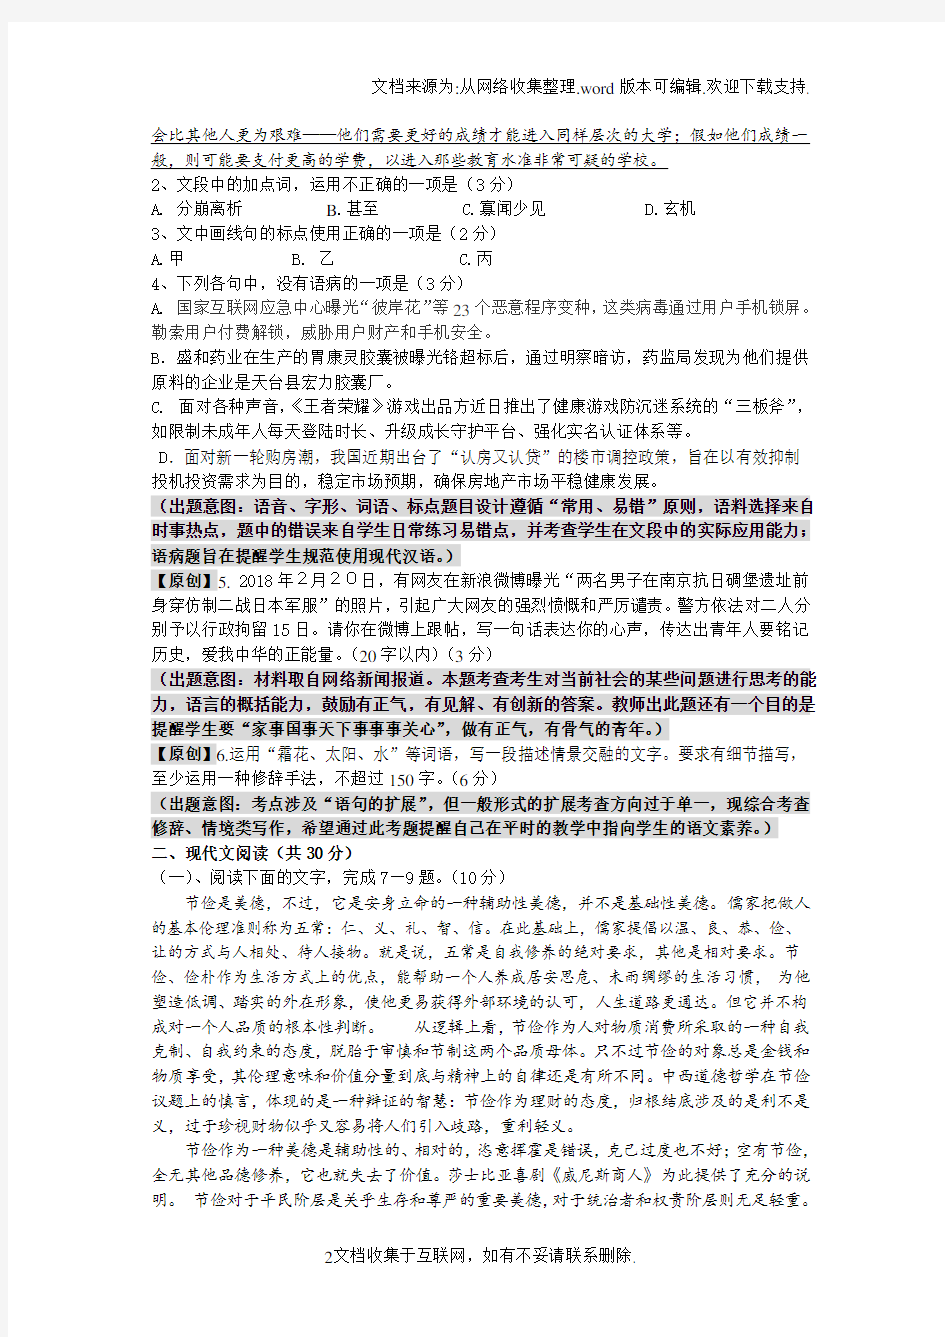 2020年浙江省高考模拟试卷语文卷